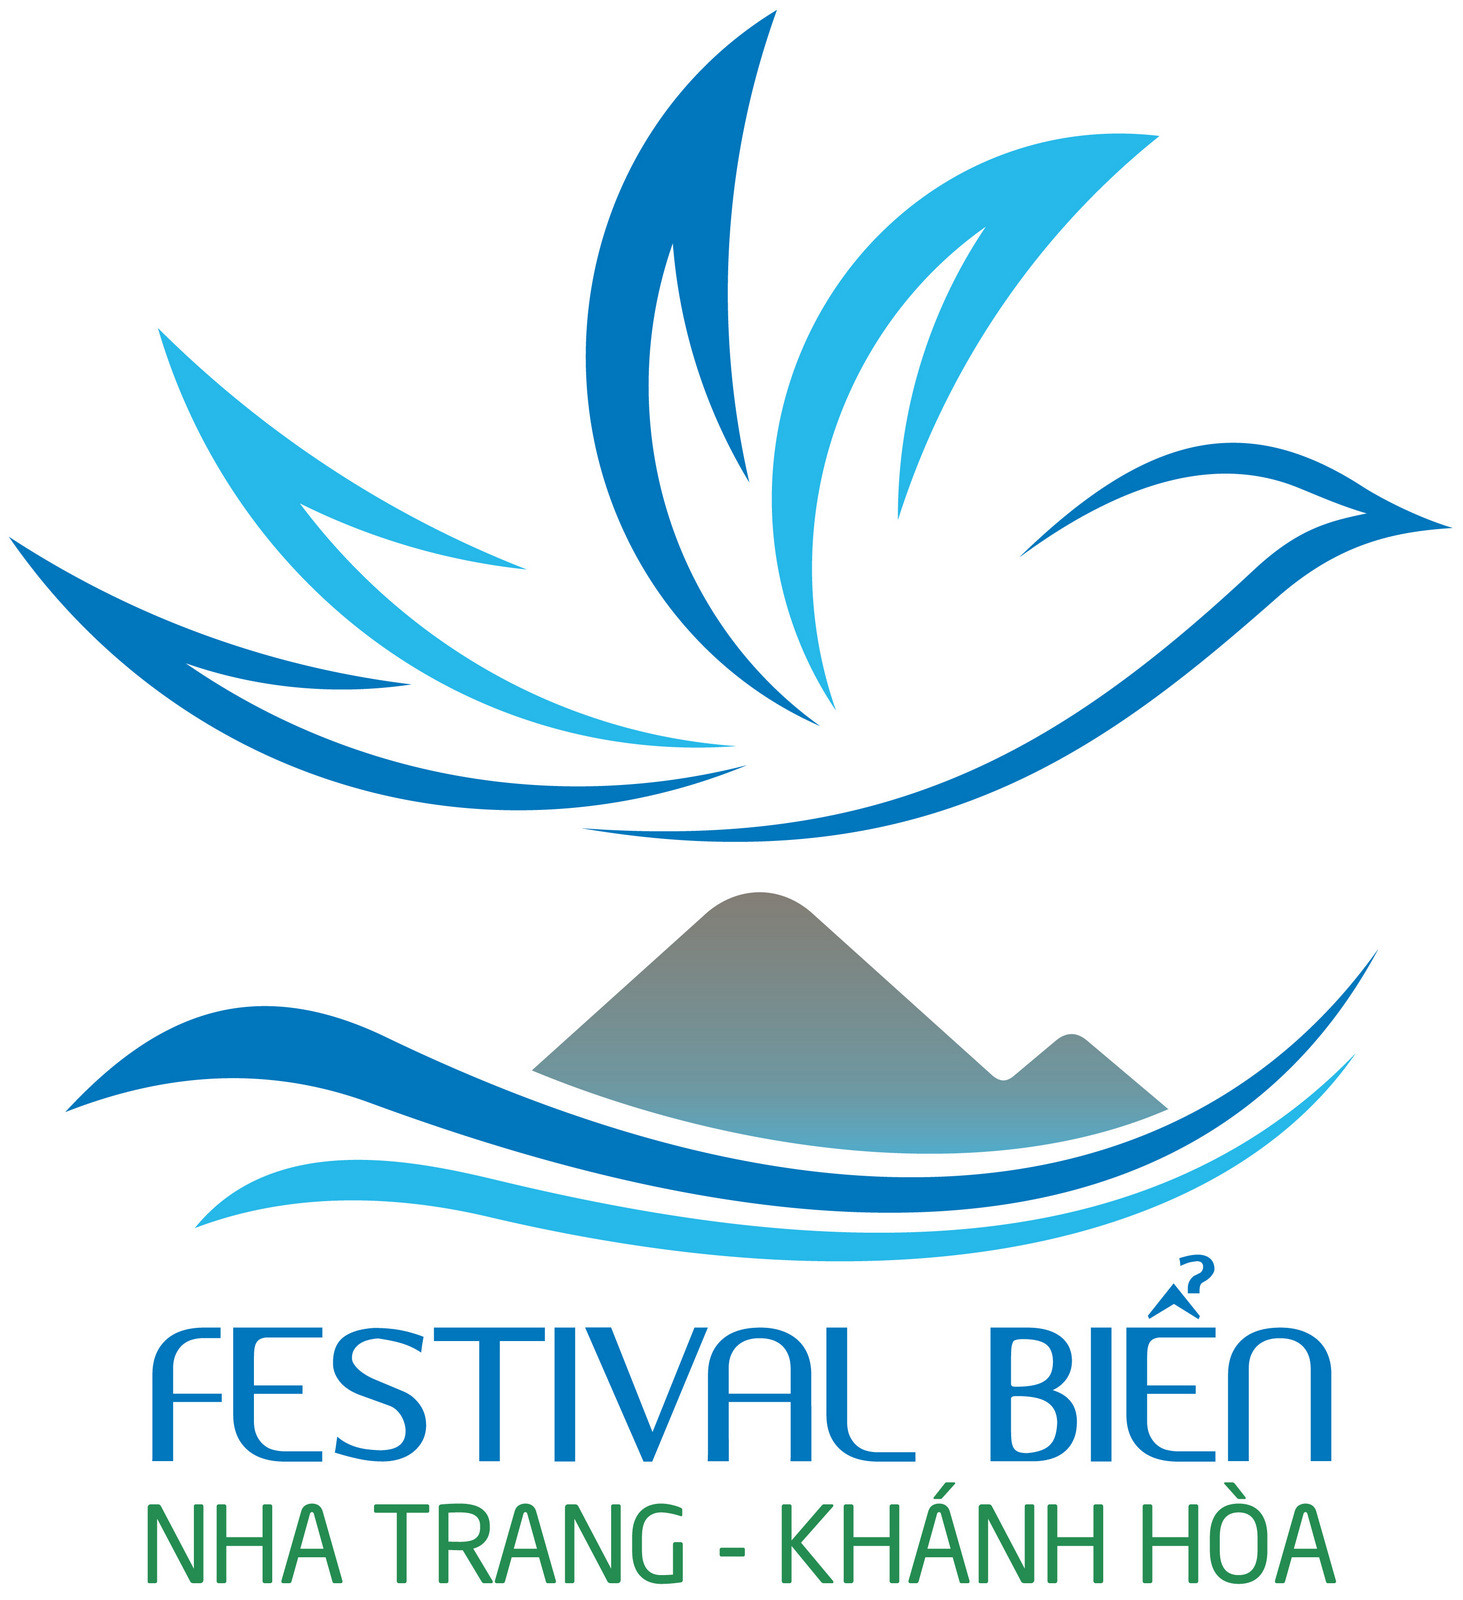  Mẫu Logo Festival Biển Nha Trang - Khánh Hòa